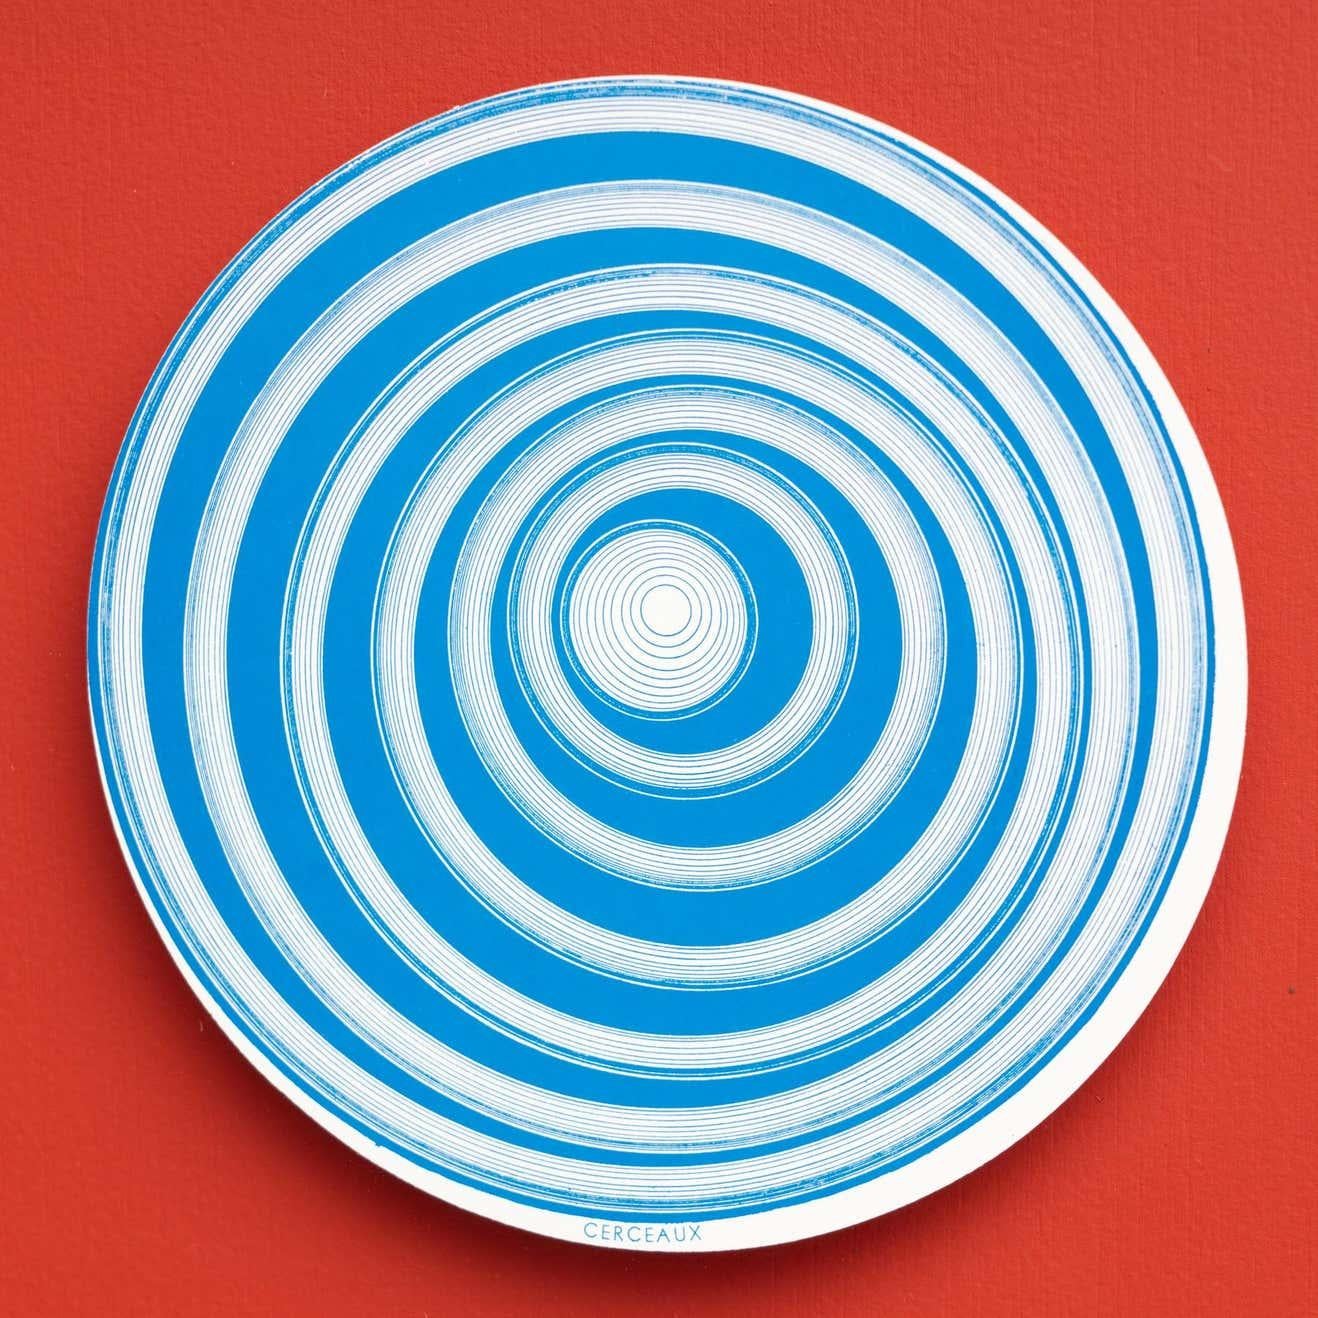 Embarquez pour un voyage visuel avec l'ensemble de 6 rotoreliefs de Marcel Duchamp, une édition étonnante encadrée en rouge par Konig Series 133 en 1987. Cette collection rend hommage aux rotoreliefs emblématiques de Duchamp datant de 1935, en